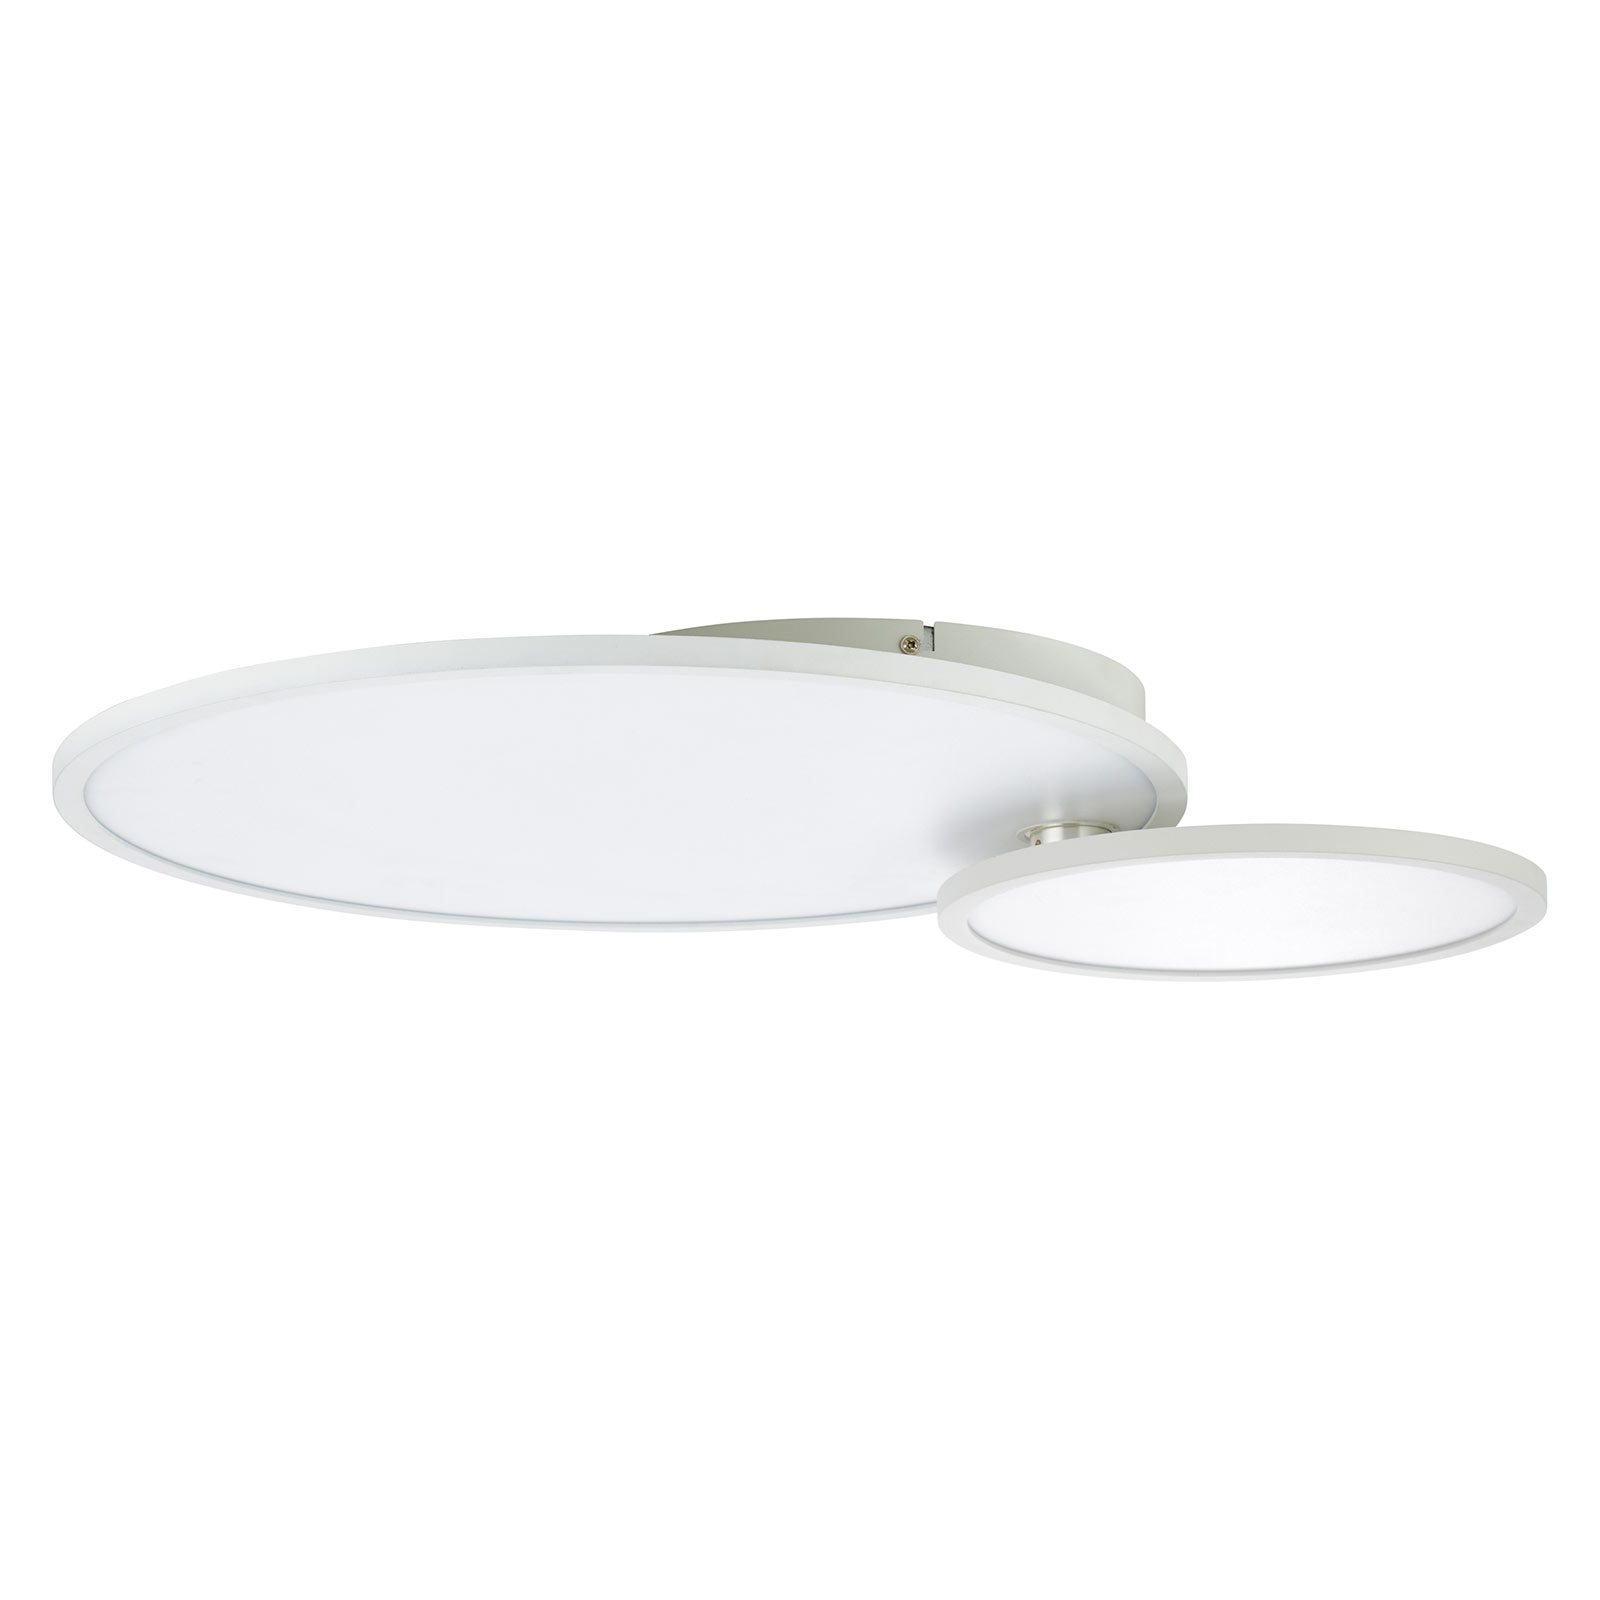 LED-Deckenlampe Bility, rund, Rahmen weiß